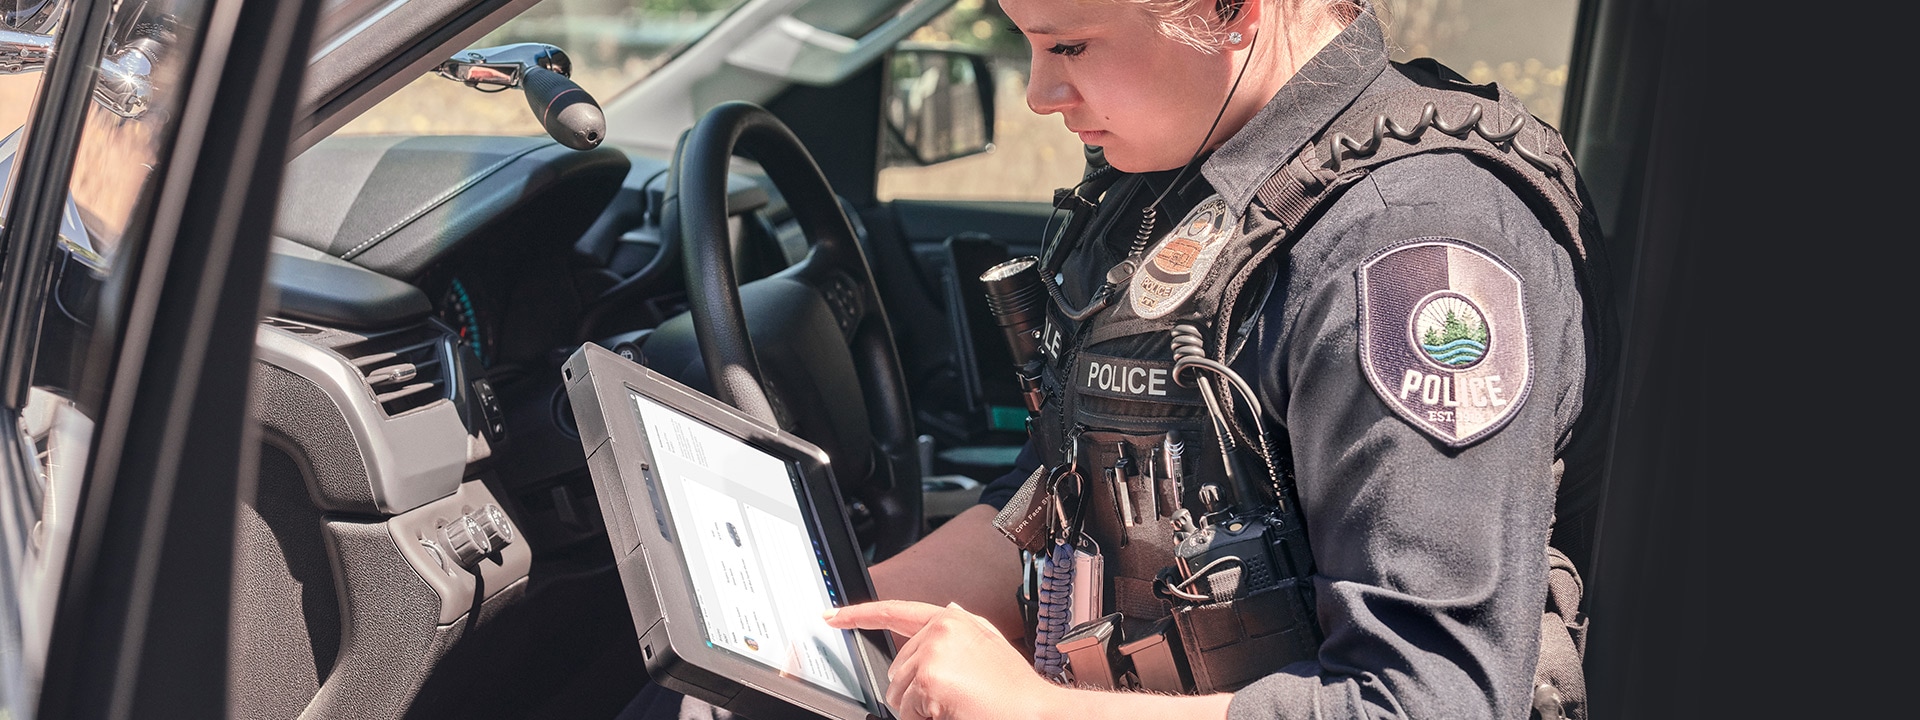 パトカーの助手席に座って Surface Pro デバイスを使用している警察官